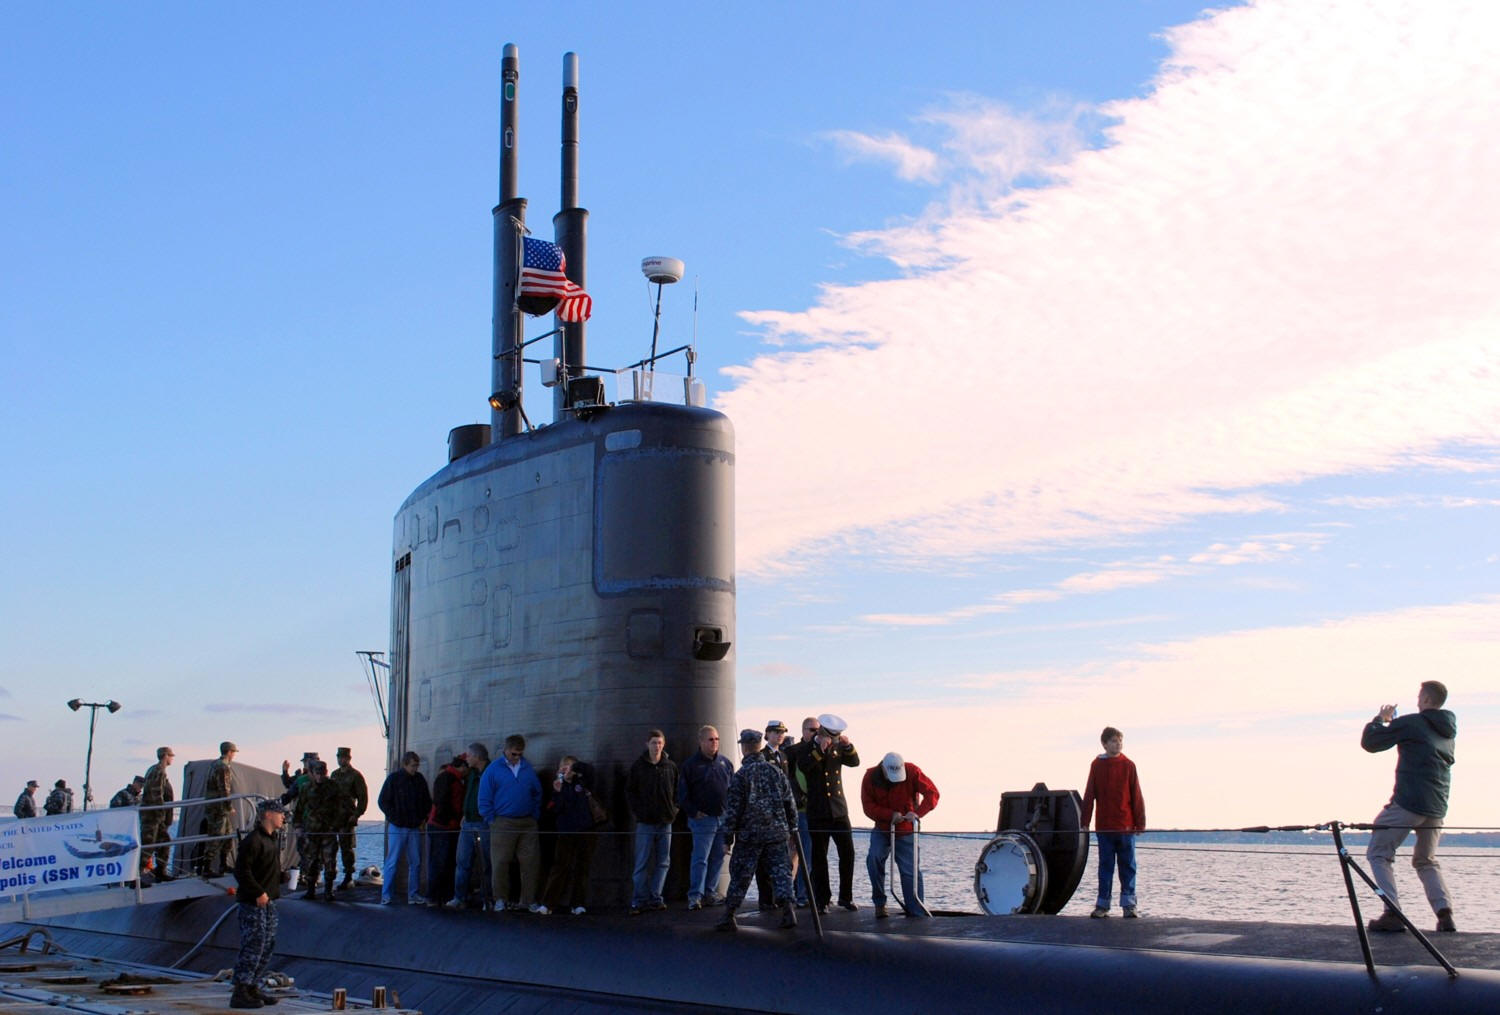 ssn-760 uss annapolis us navy submarine